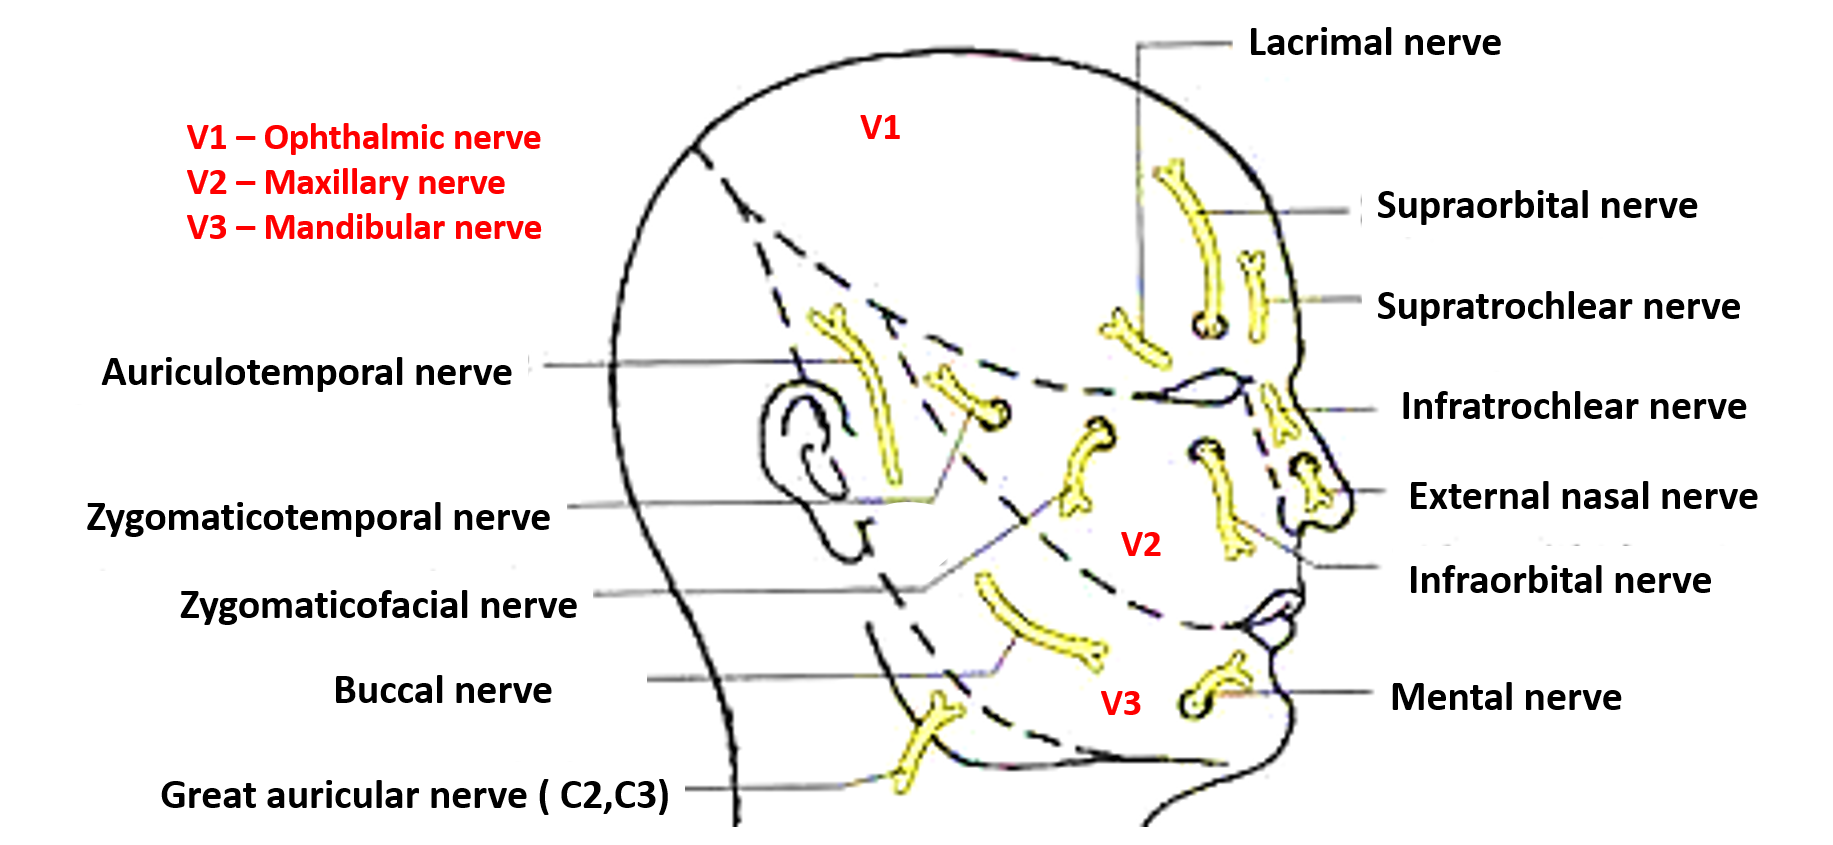 sensory nerve supply of face